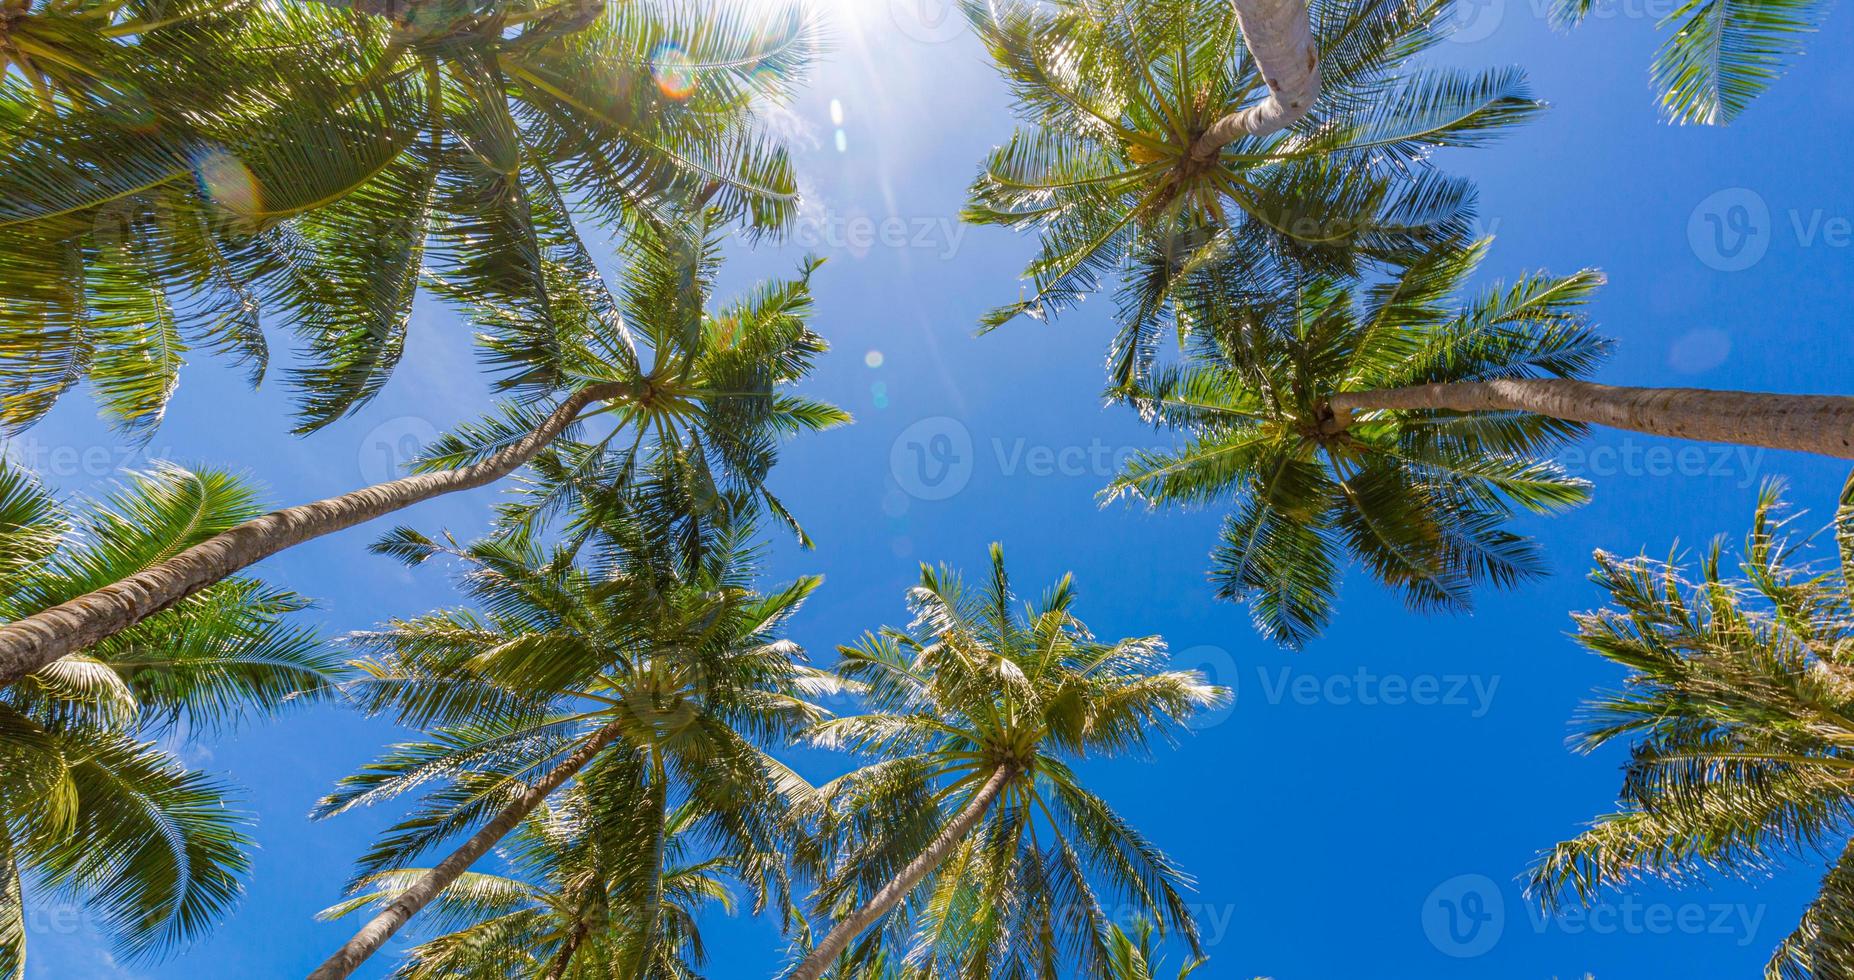 kokospalm met blauwe lucht, prachtige tropische zonnestralen achtergrond. exotische natuur laag standpunt met palmbladeren. reis landschap foto